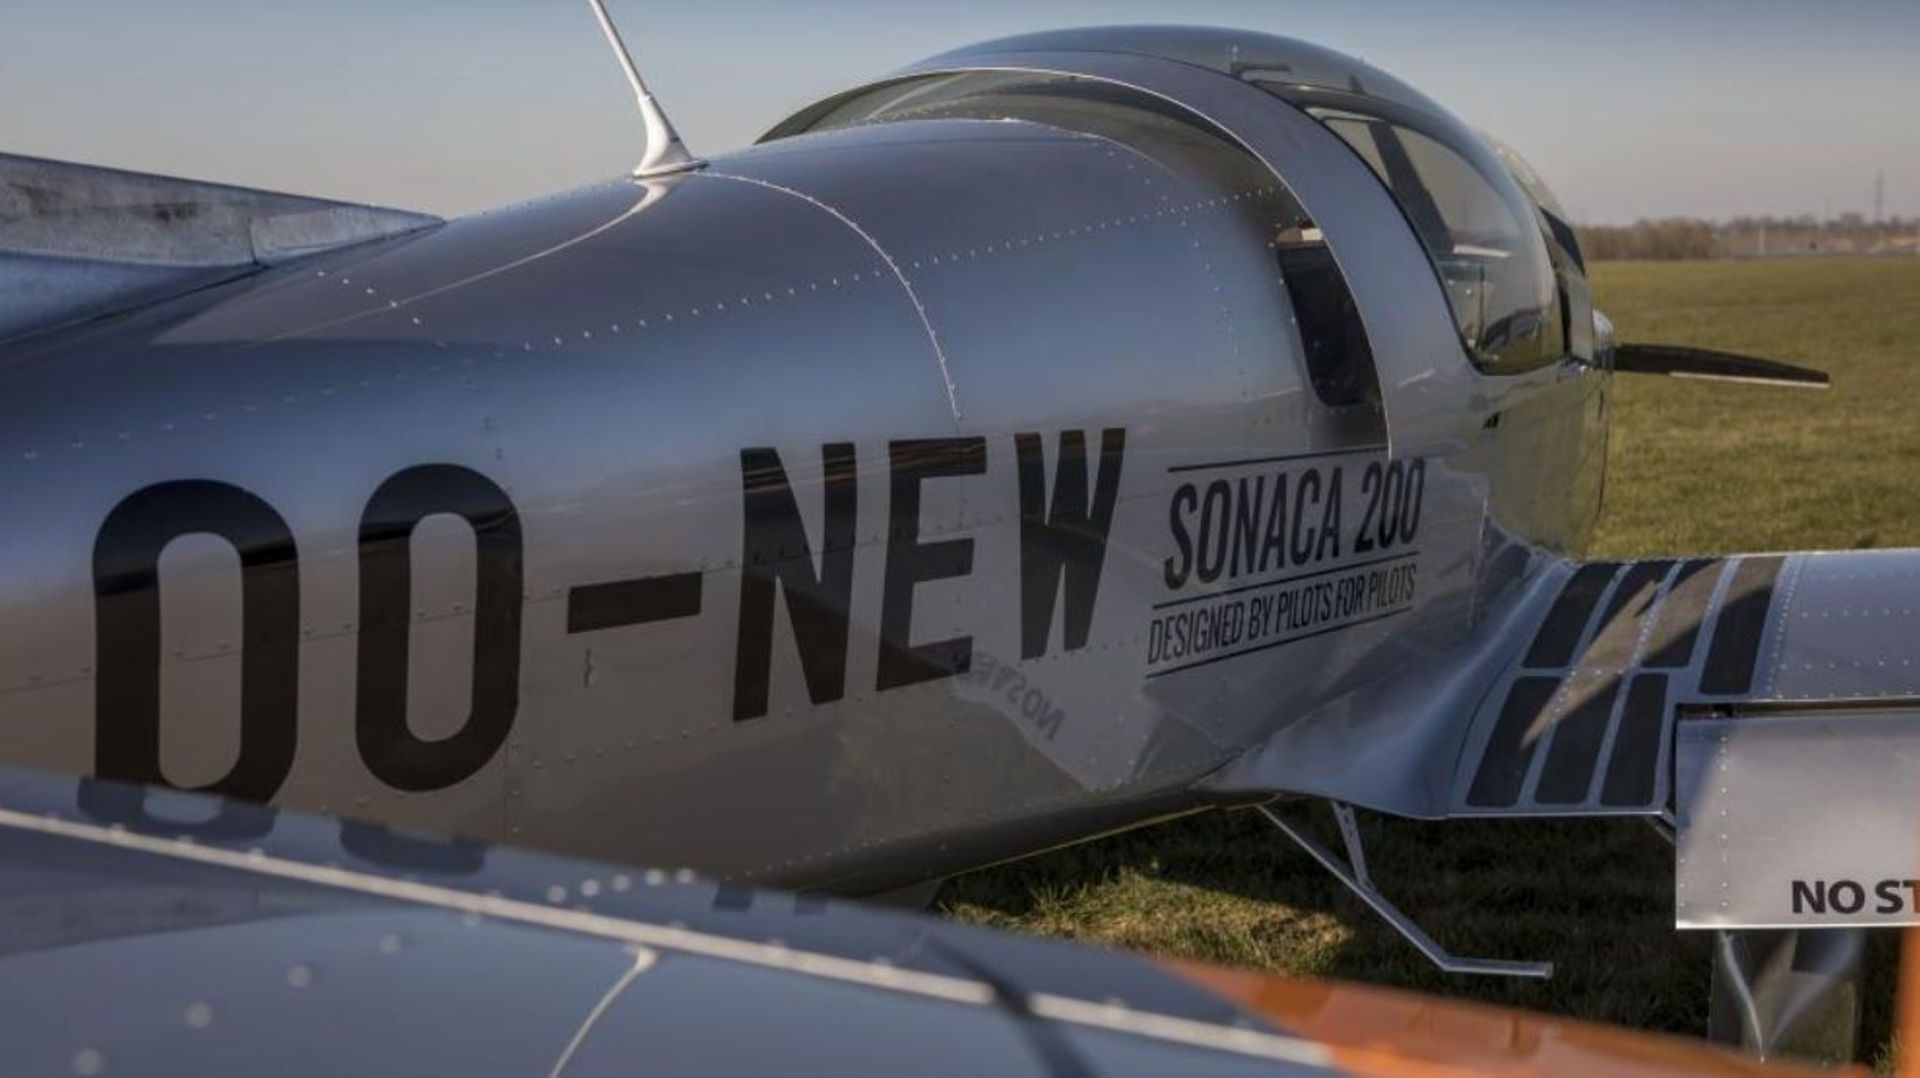 L'appareil qui s'est écrasé, c'est le Sonaca 200, le nouvel avion 100% belge de la société, construit près de Namur.